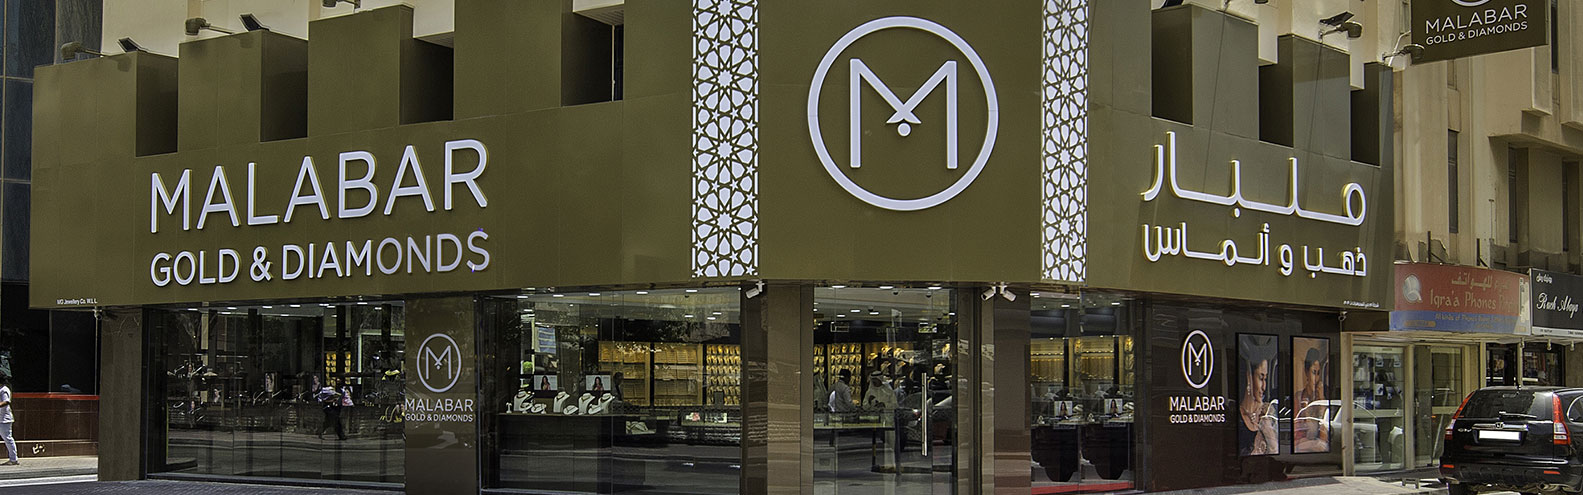 Malabar Gold & Diamonds Stores in Manama-II, Bahrain